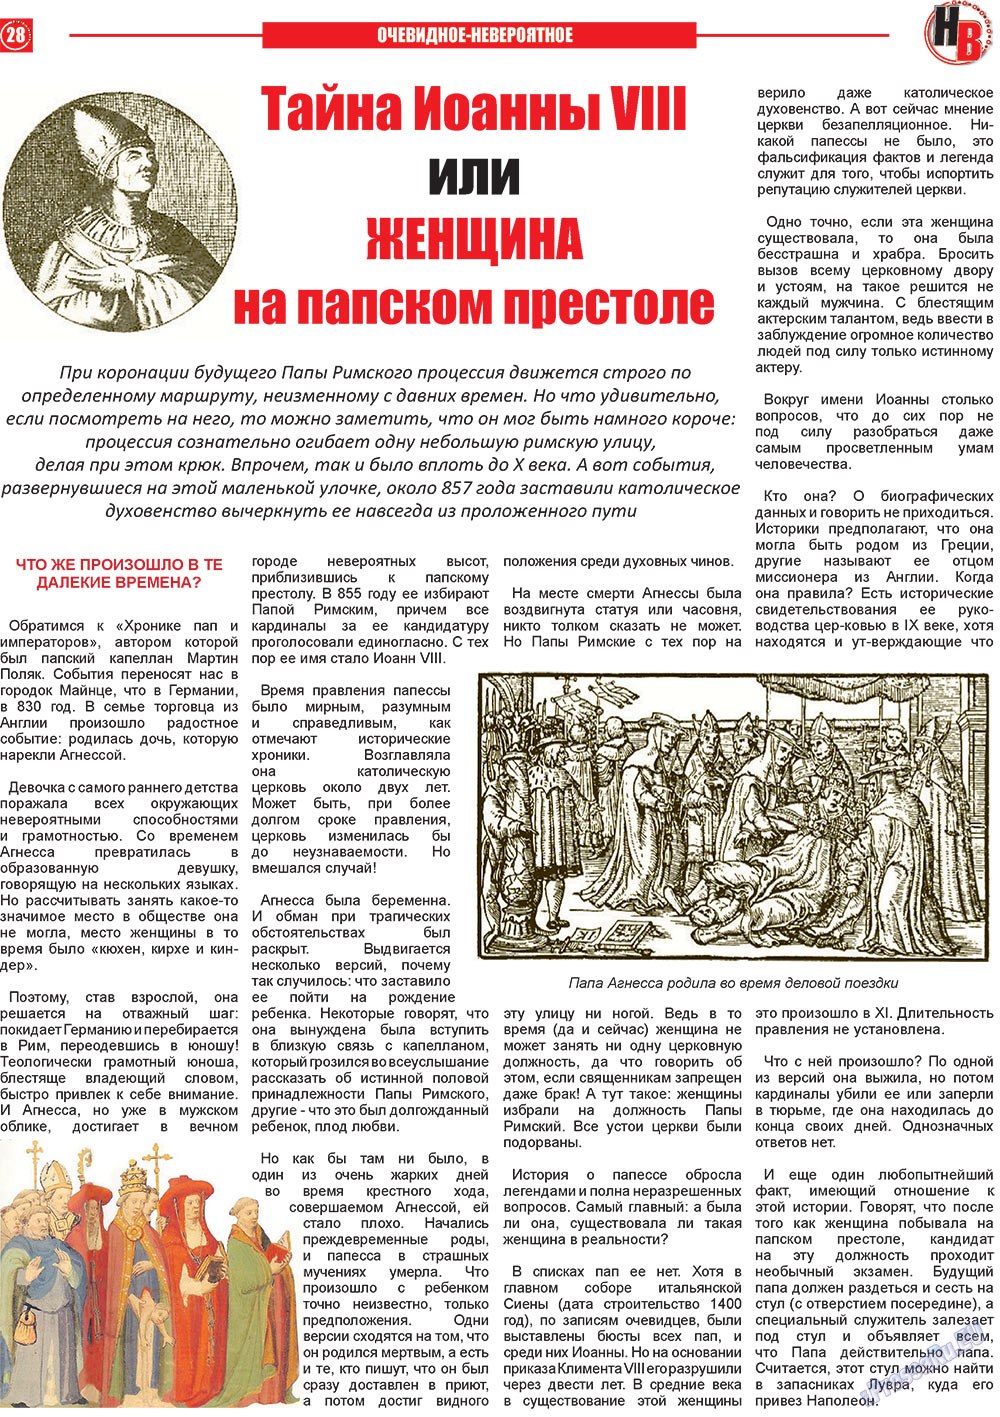 Наше время, газета. 2013 №2 стр.28